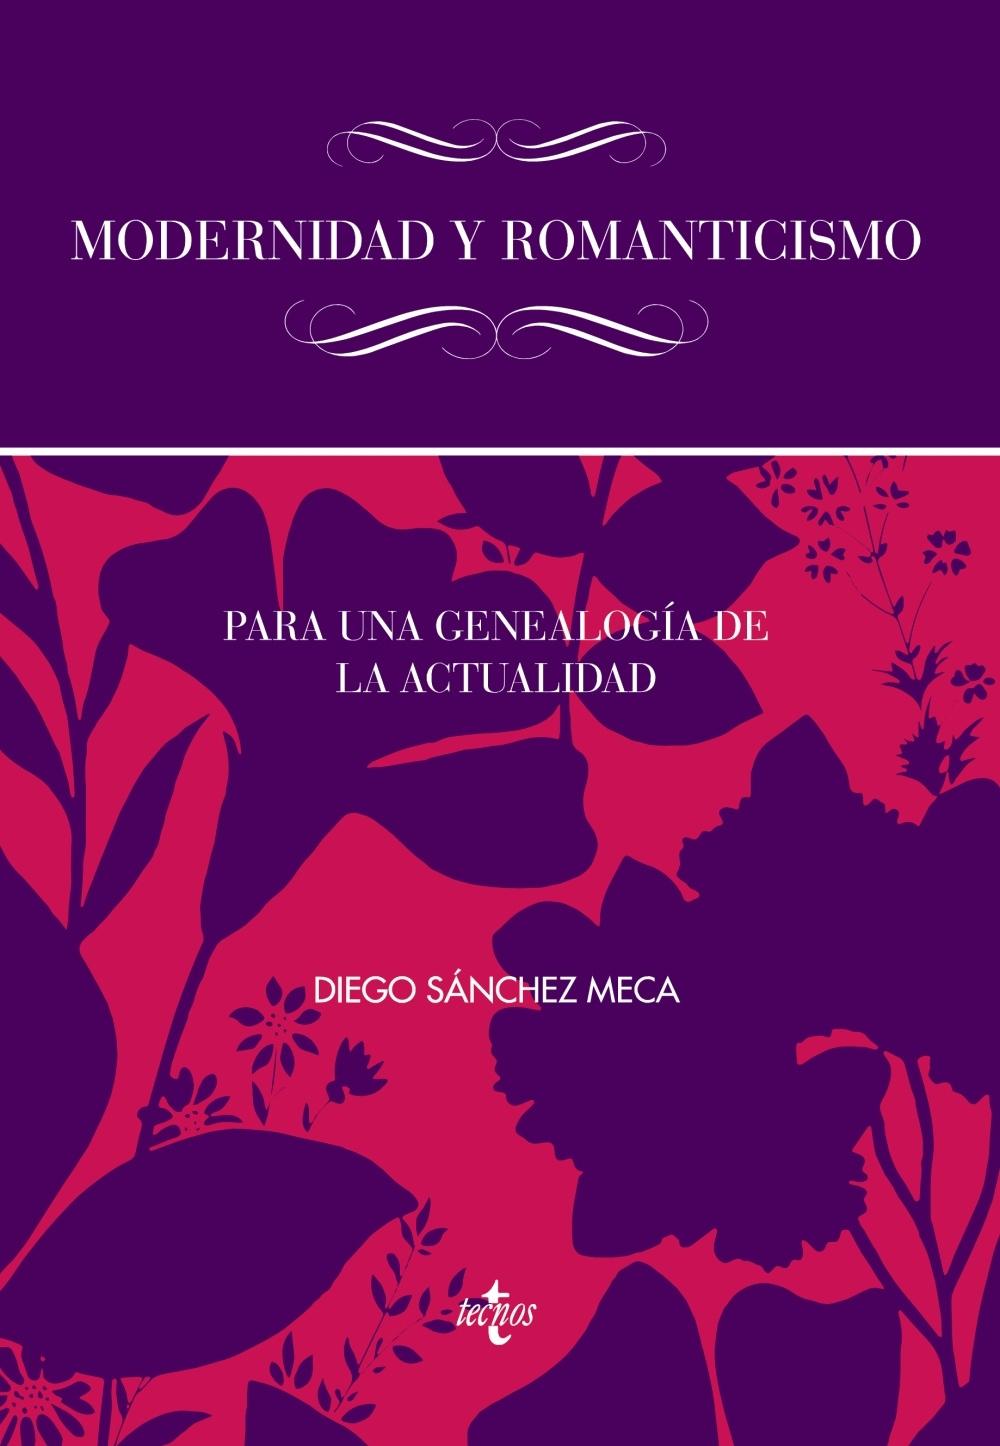 Modernidad y romanticismo "Para una genealogía de la actualidad"